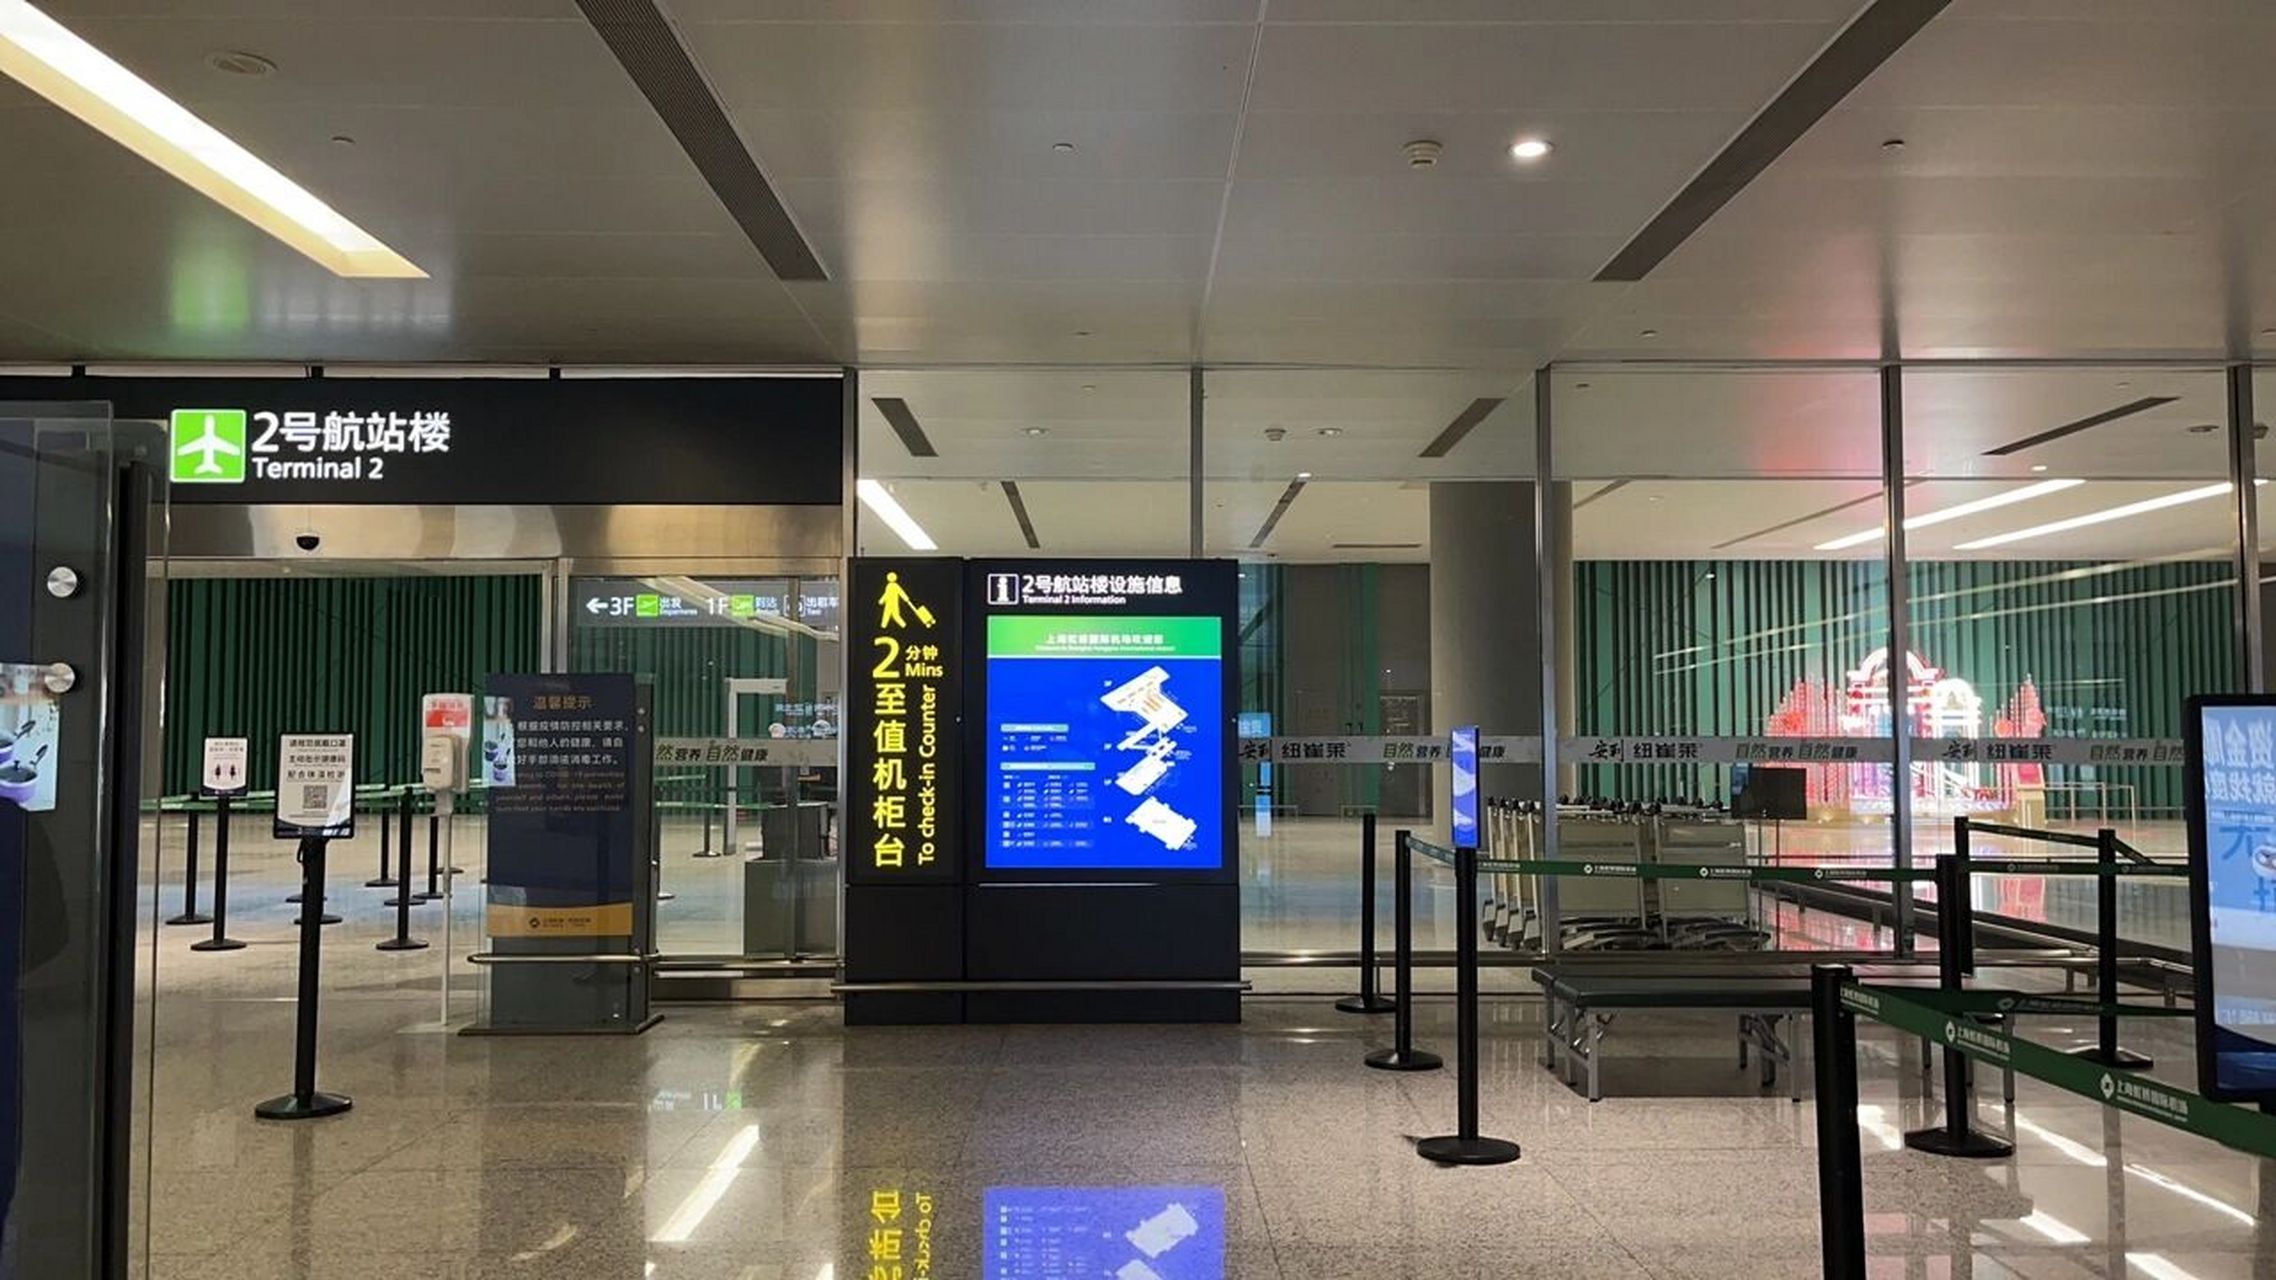 上海虹桥机场t2航站楼 接人的时候备用